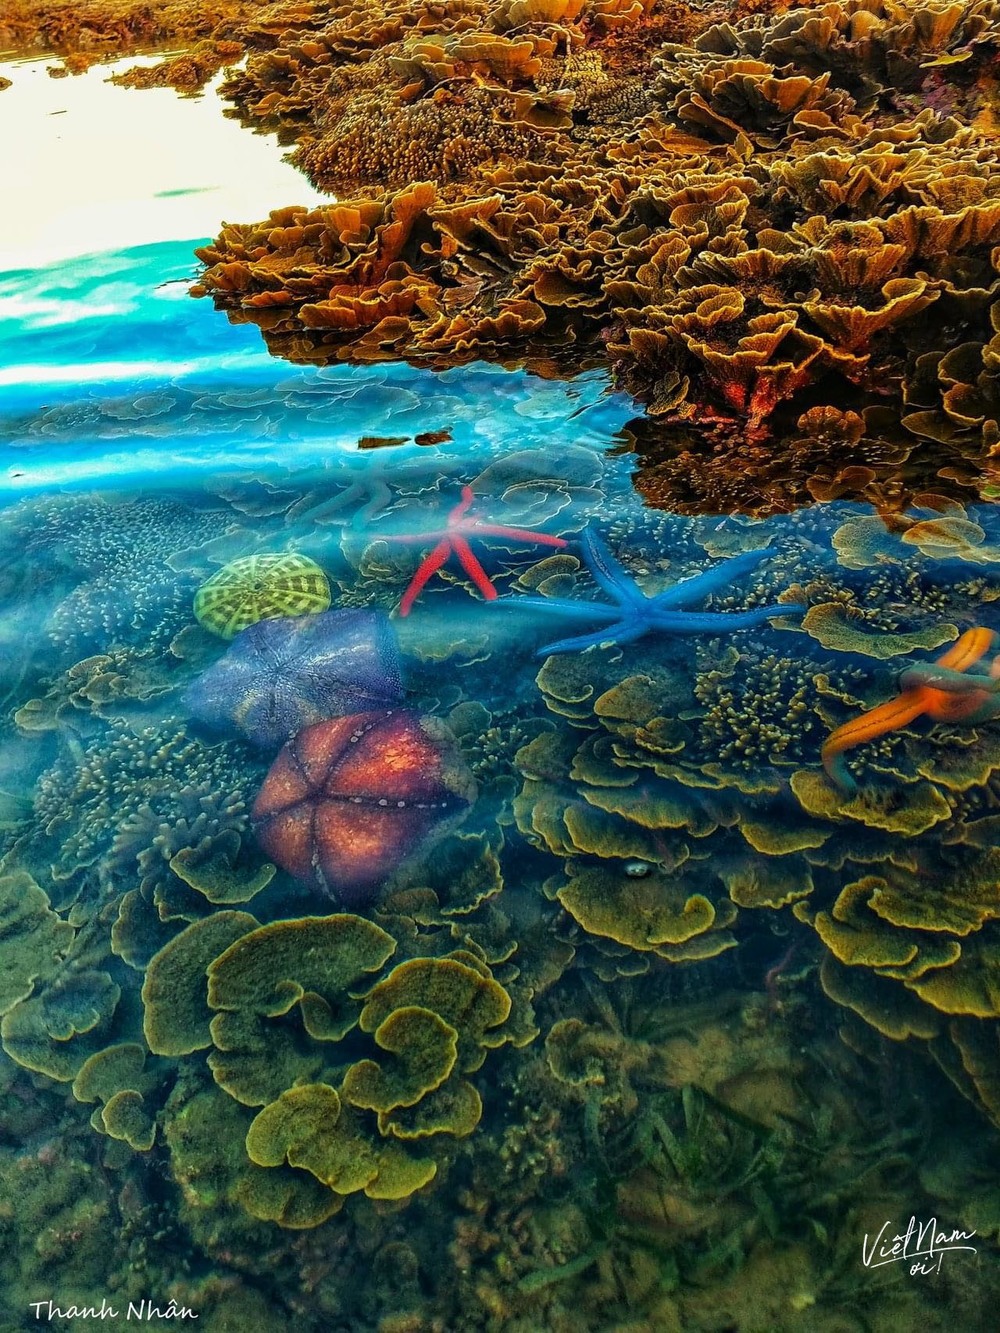  
Những sinh vật biển đa màu sắc, thể hiện vẻ đẹp độc đáo của Hòn Yến, Phú Yên.